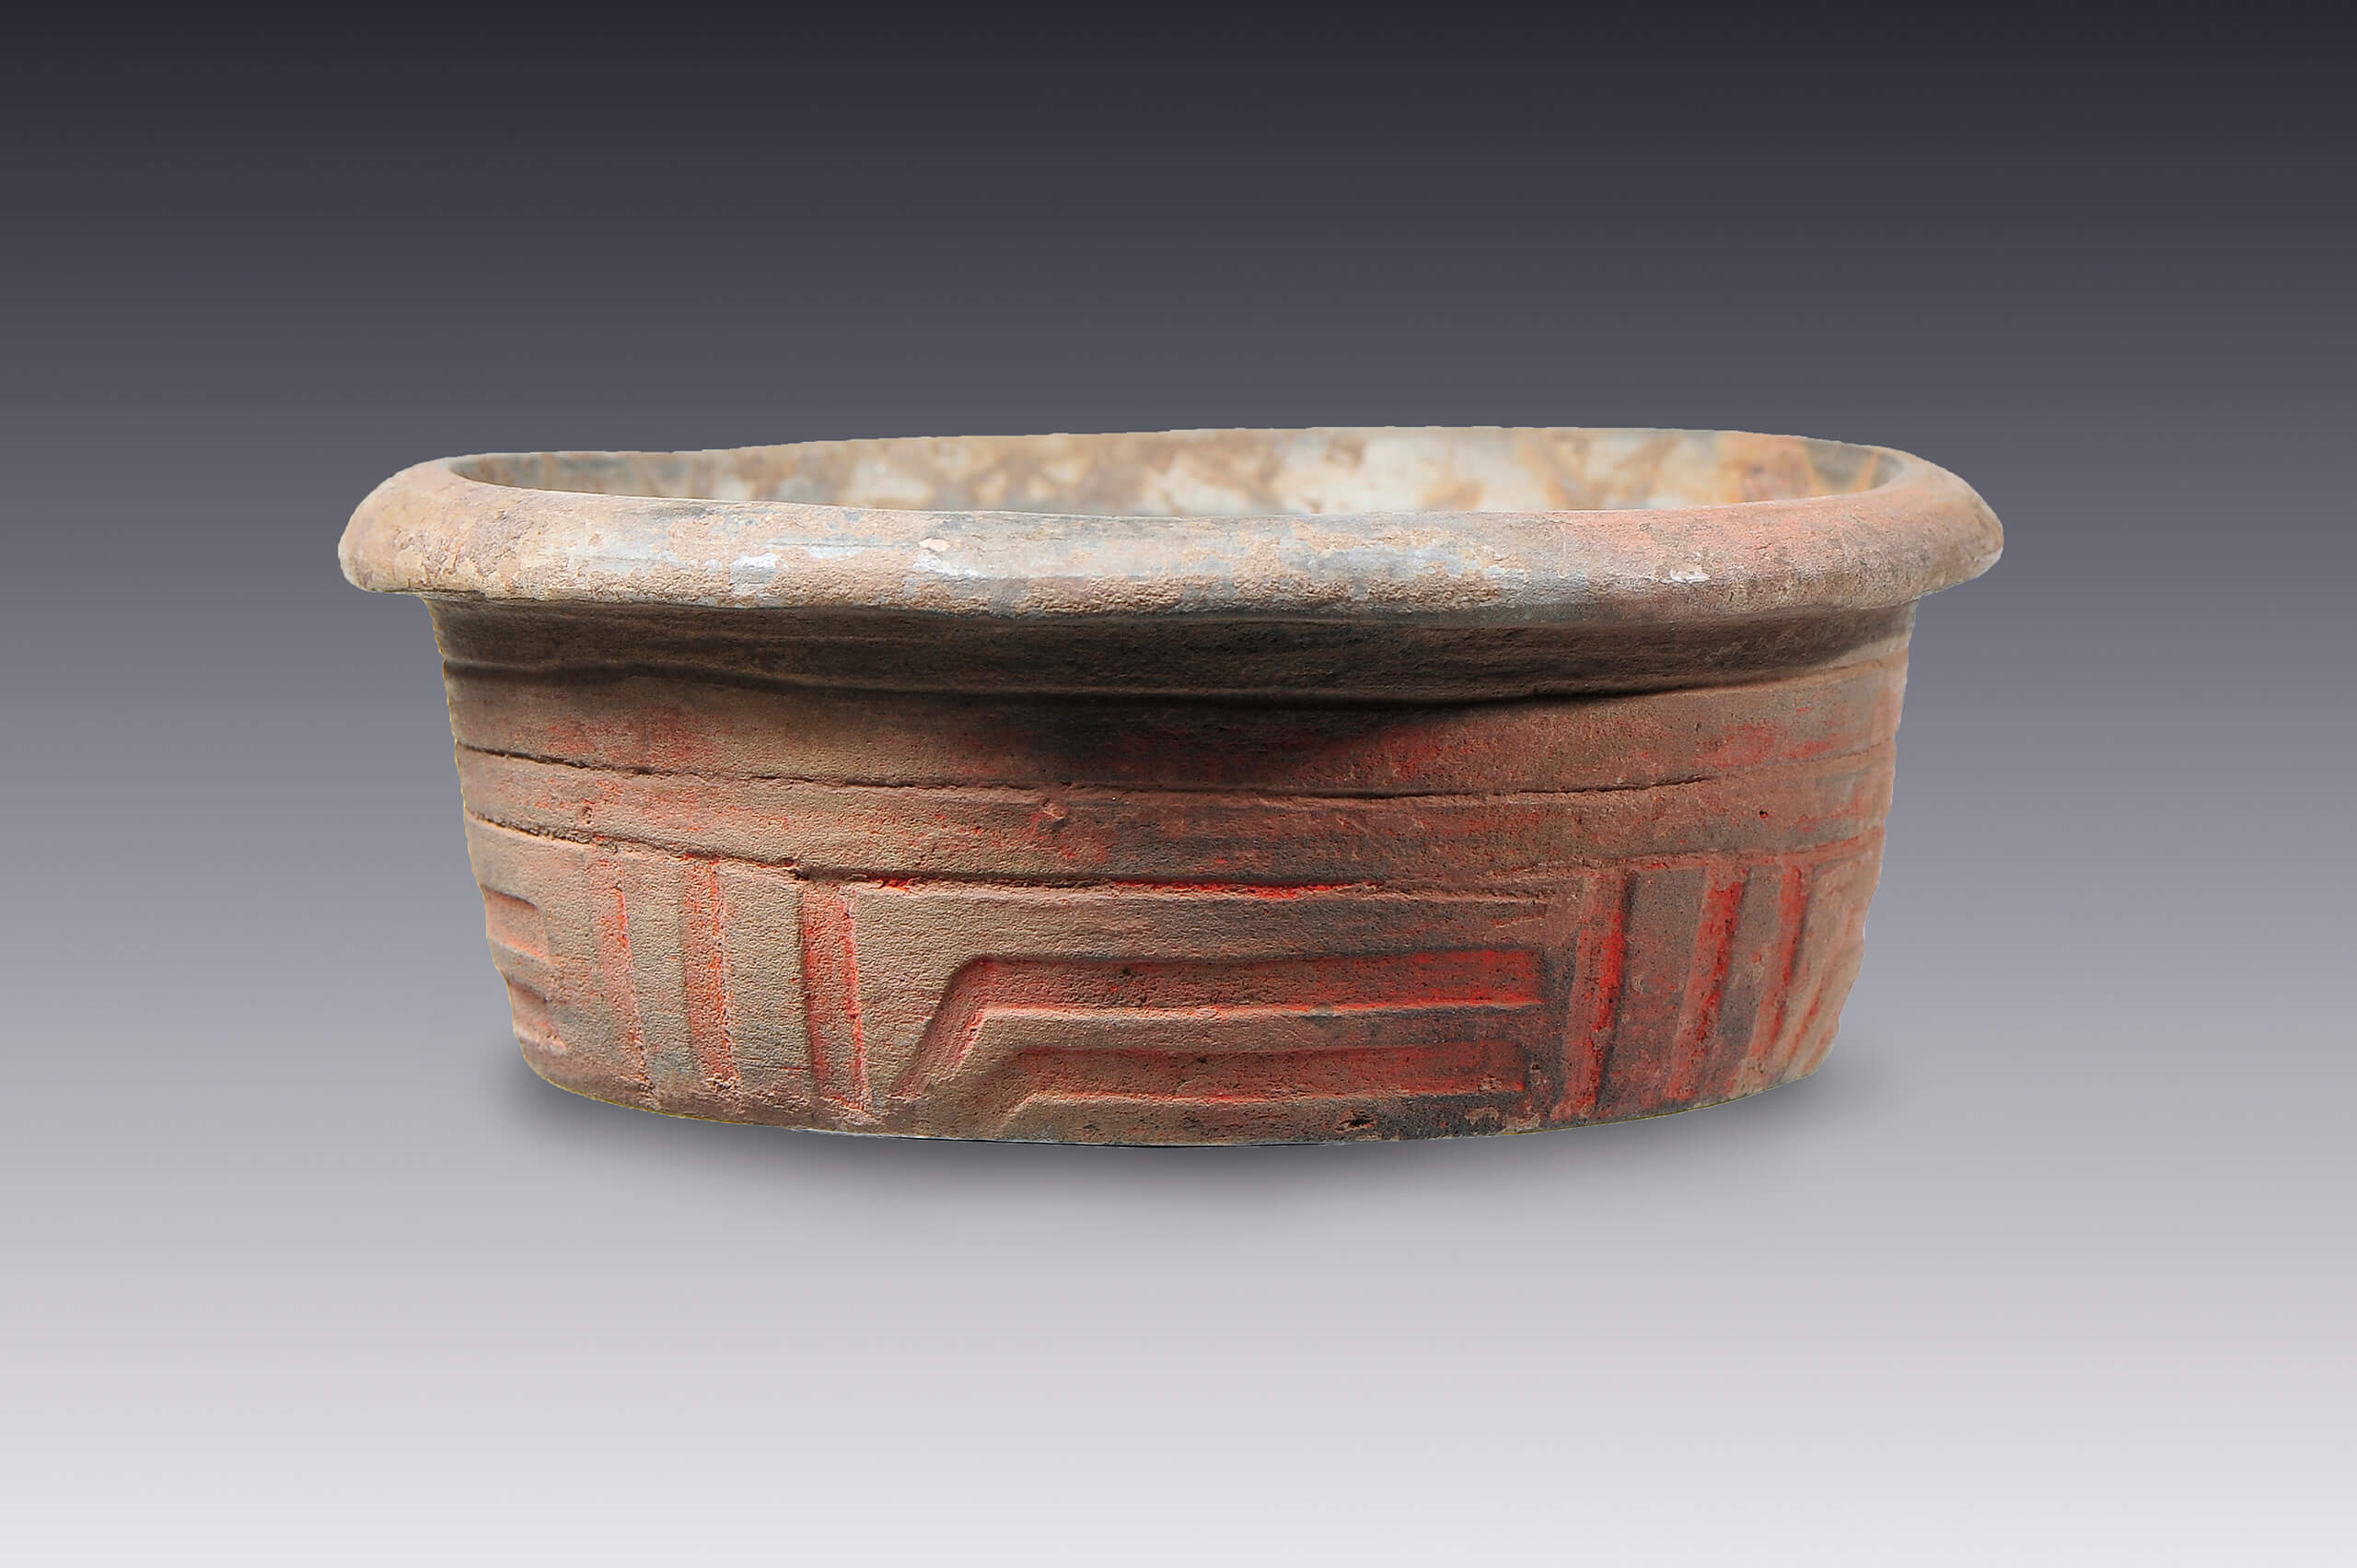 Vaso con reborde labial y decoración esgrafiada | El México antiguo. Salas de Arte Prehispánico | Museo Amparo, Puebla